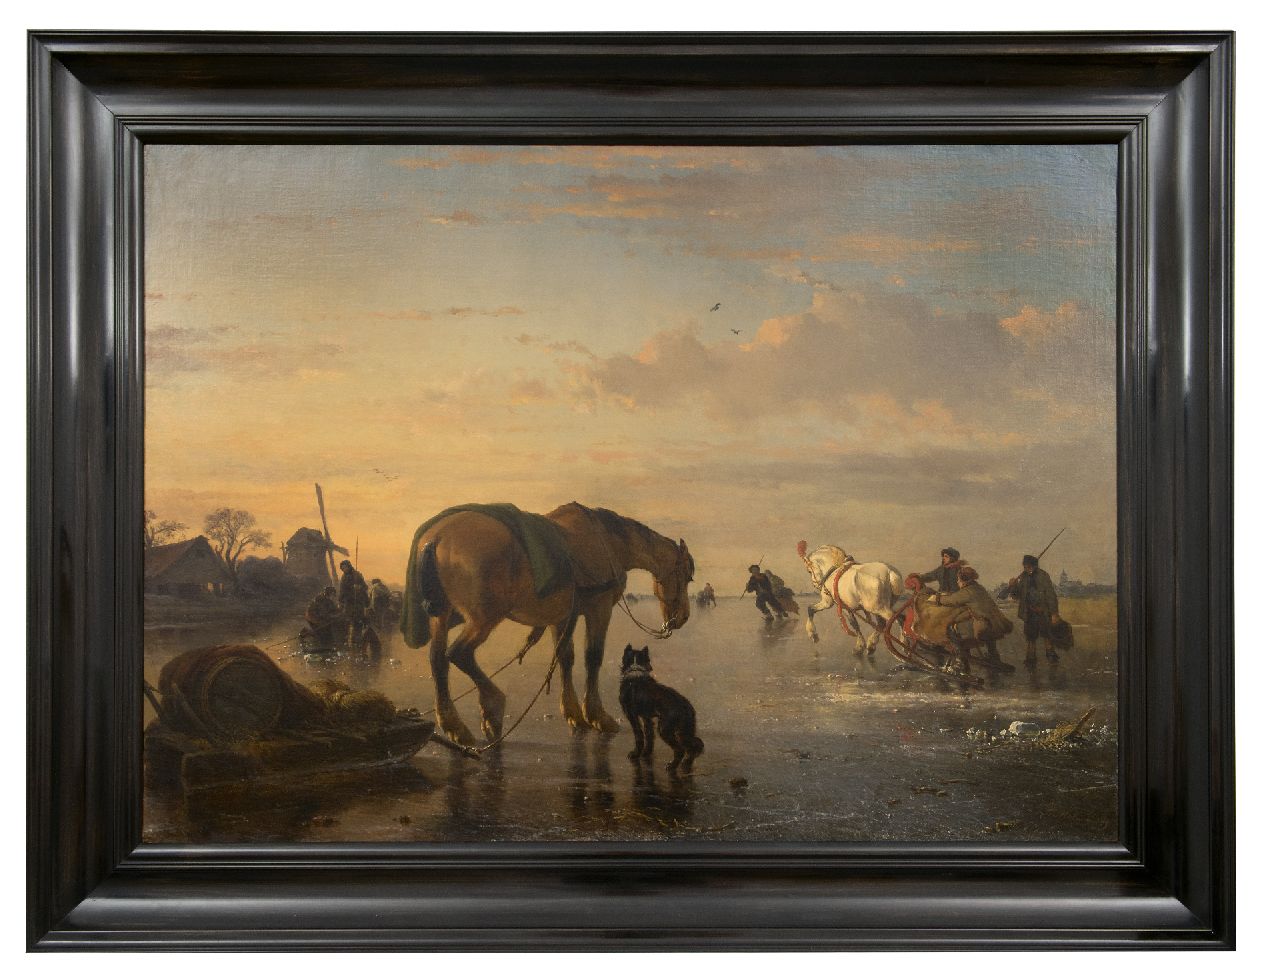 Moerenhout J.J.  | Josephus Jodocus 'Joseph' Moerenhout | Schilderijen te koop aangeboden | Paarden en sledes op het ijs, olieverf op doek 85,0 x 118,5 cm, gesigneerd rechtsonder